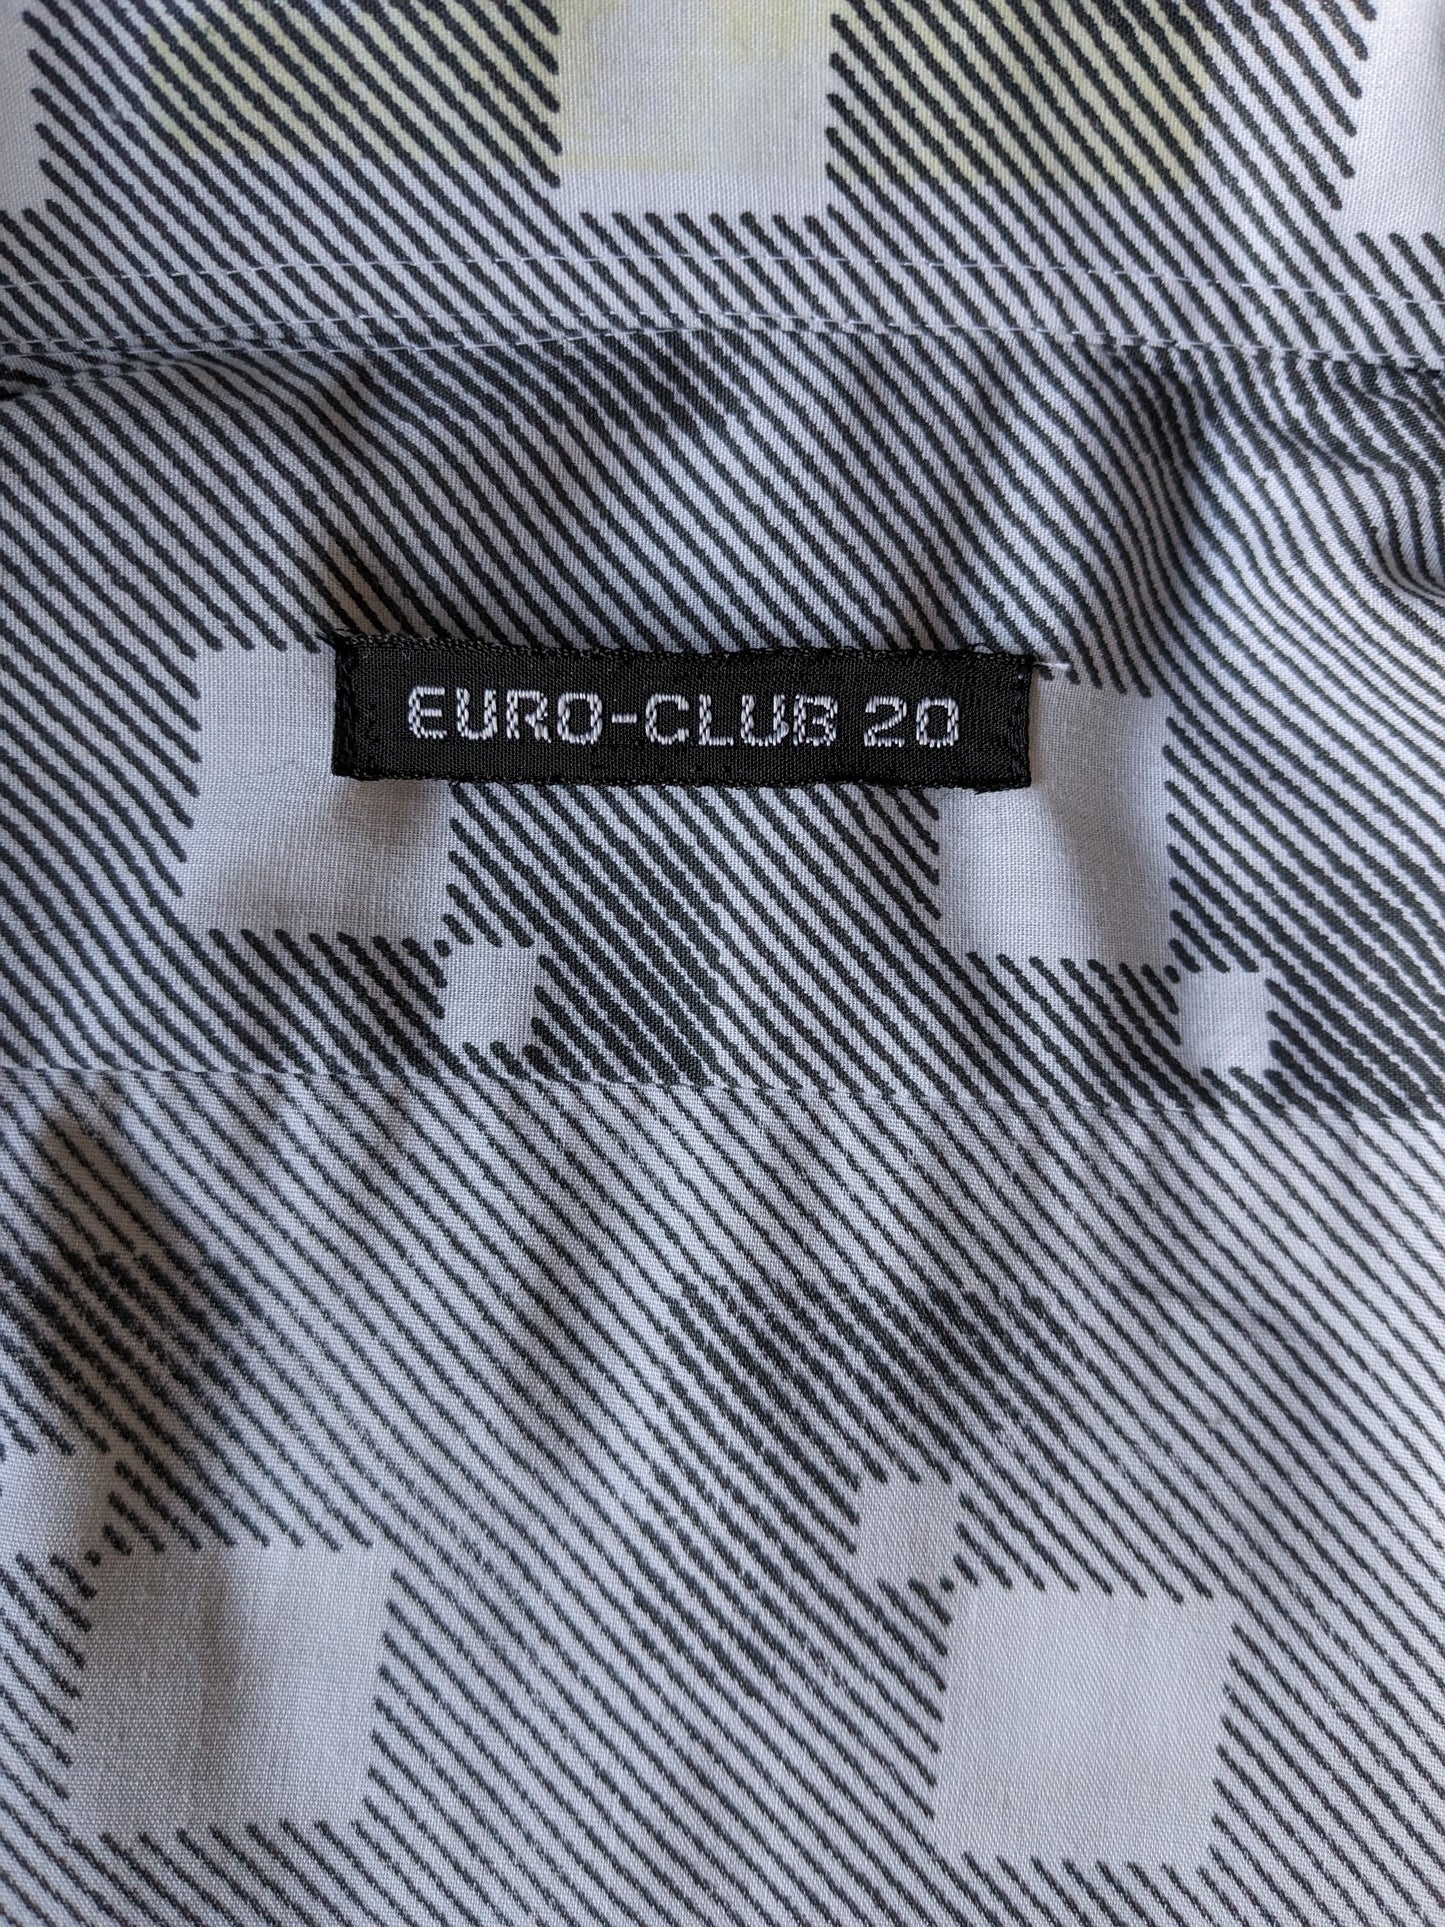 Camisa Vintage Euro-Club-20 70 con cuello de punto. Estampado gris blanco. Talla M.